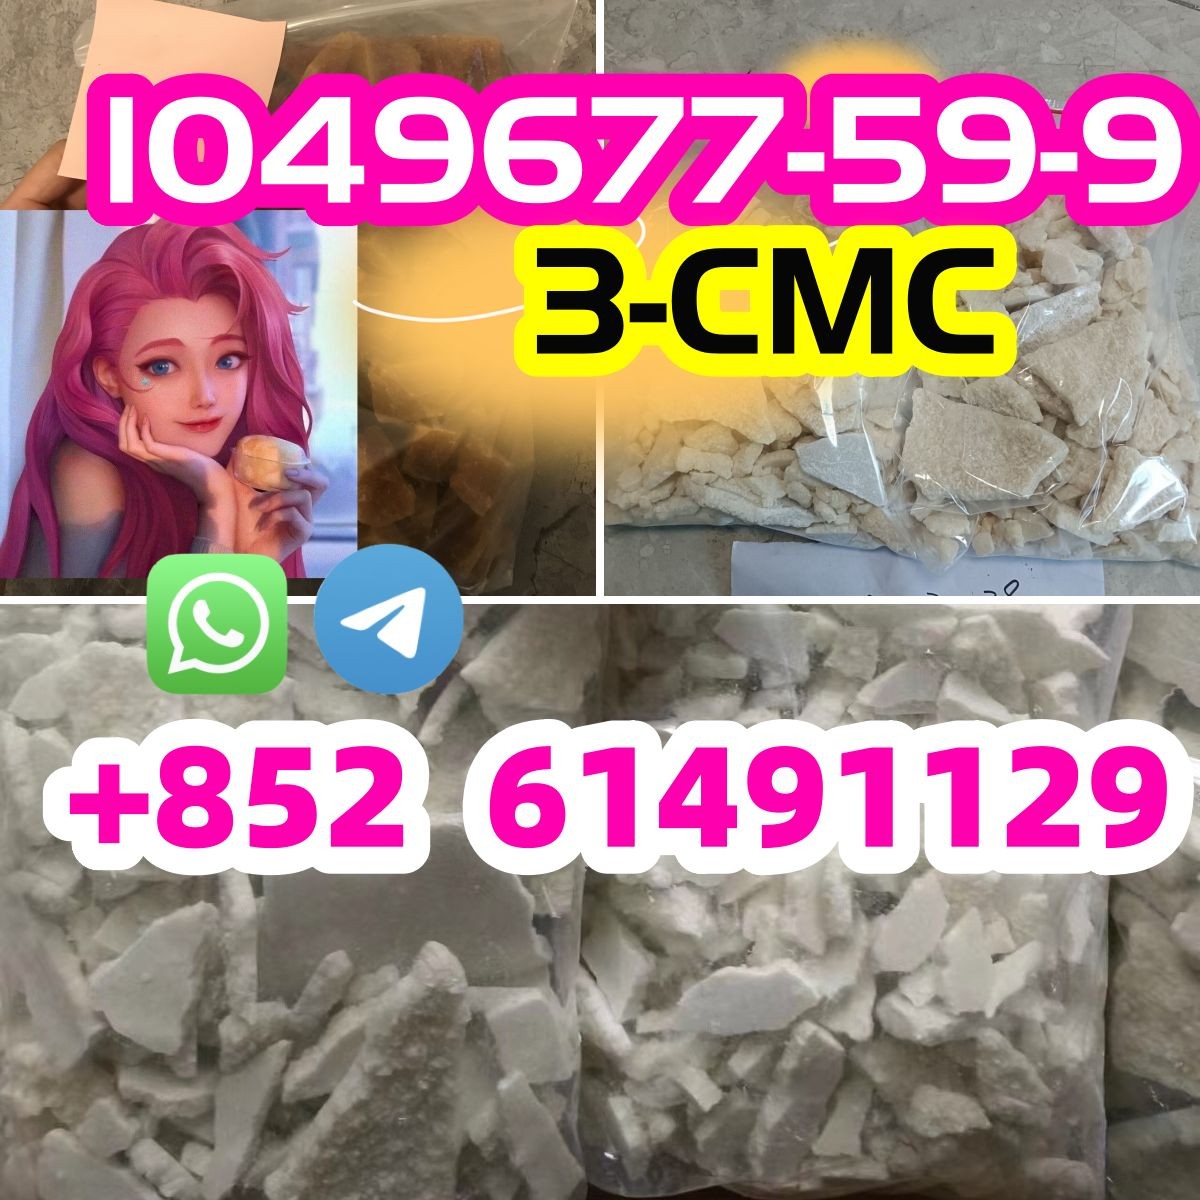 1049677-59-9 ,1607439-32-6,3-CMC,4CMC-image